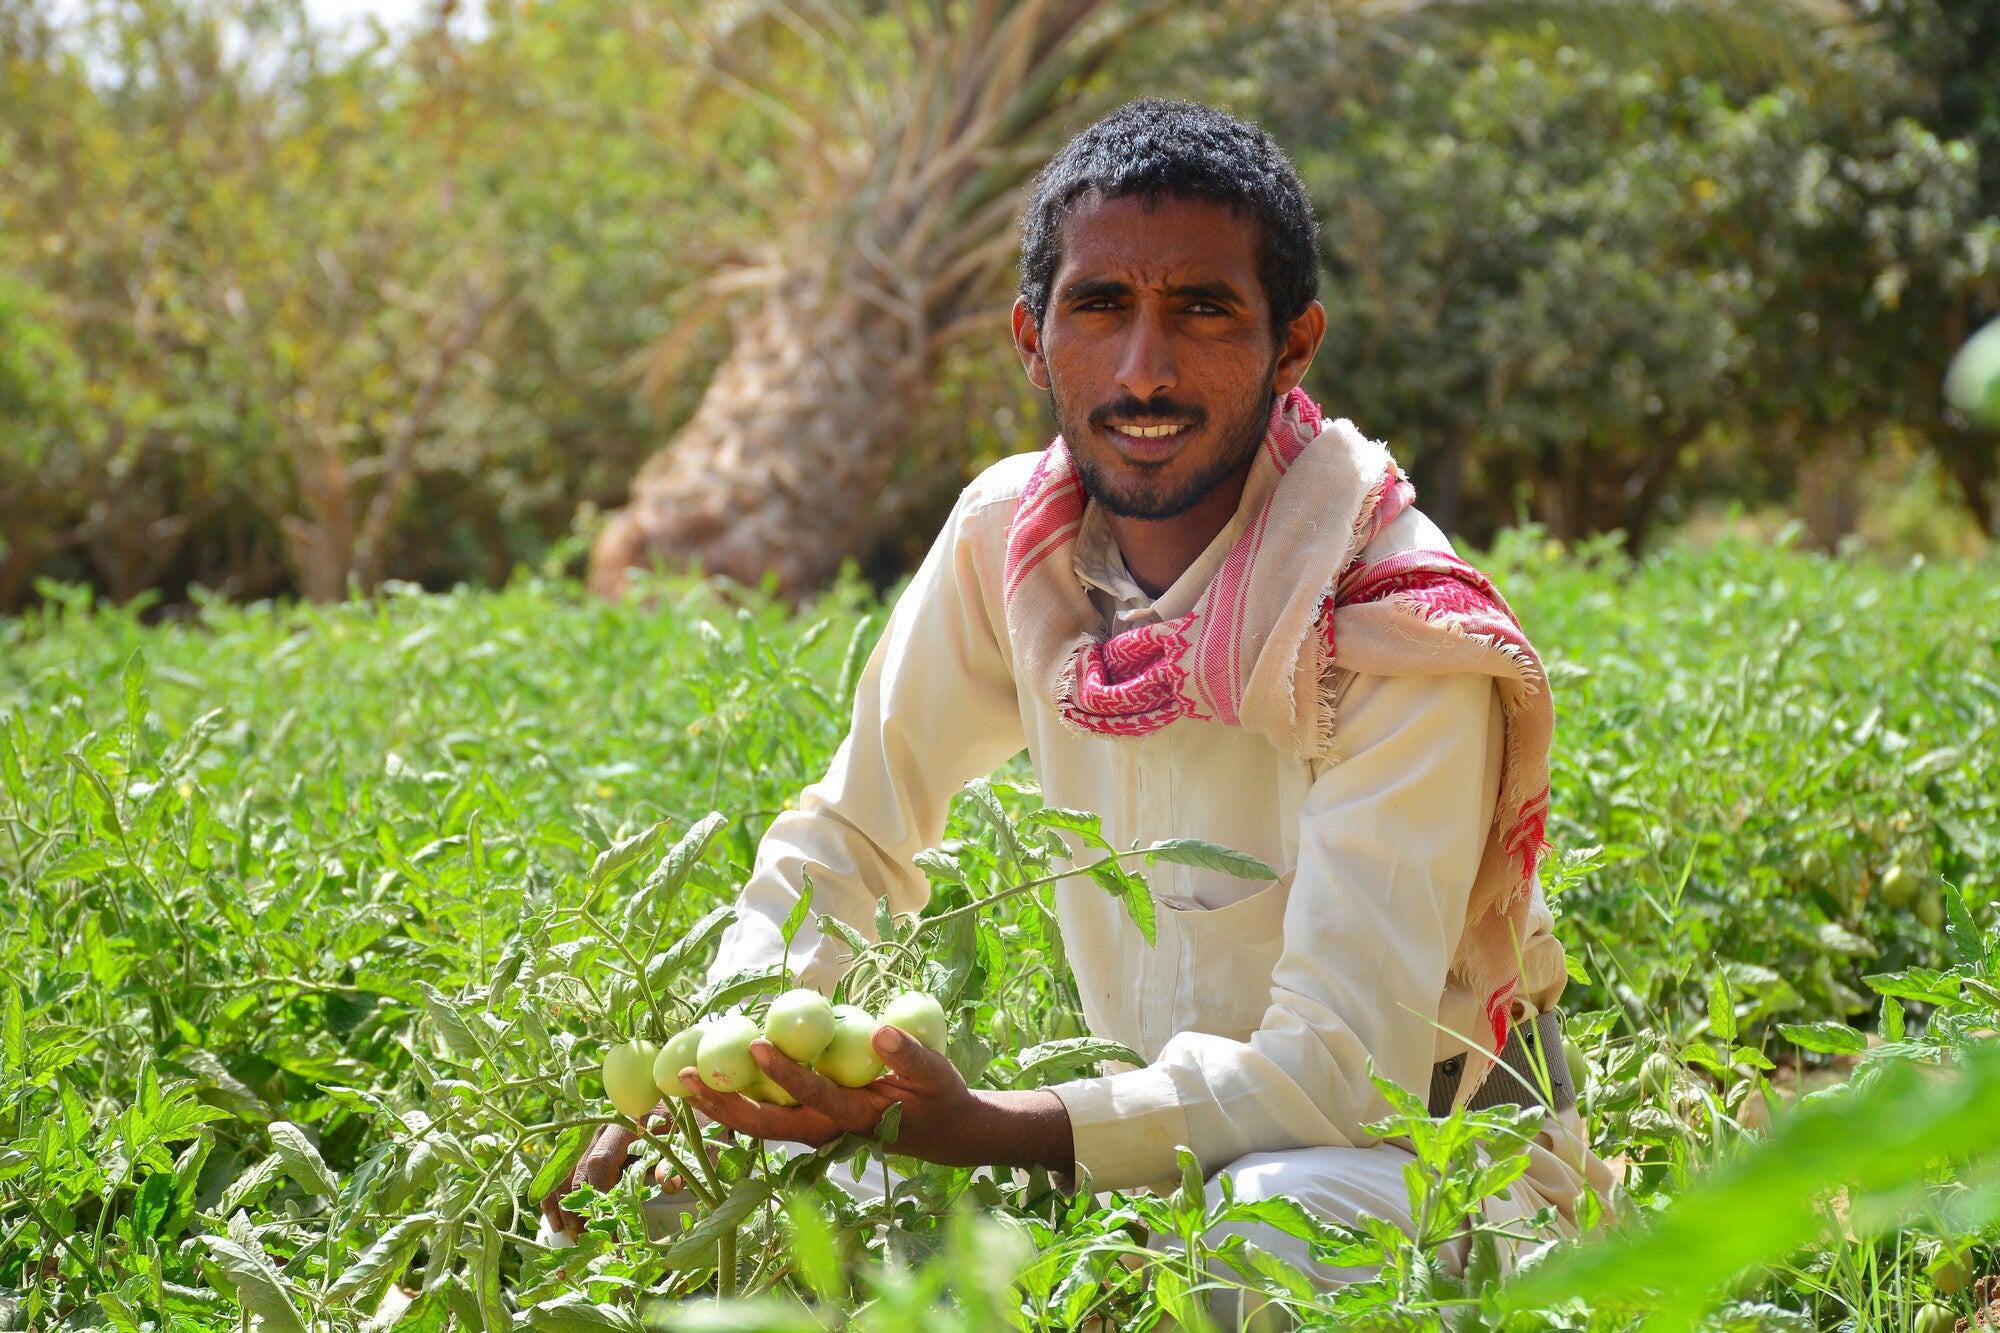 Portrait of a farmer kneeling in a field, holding crops.